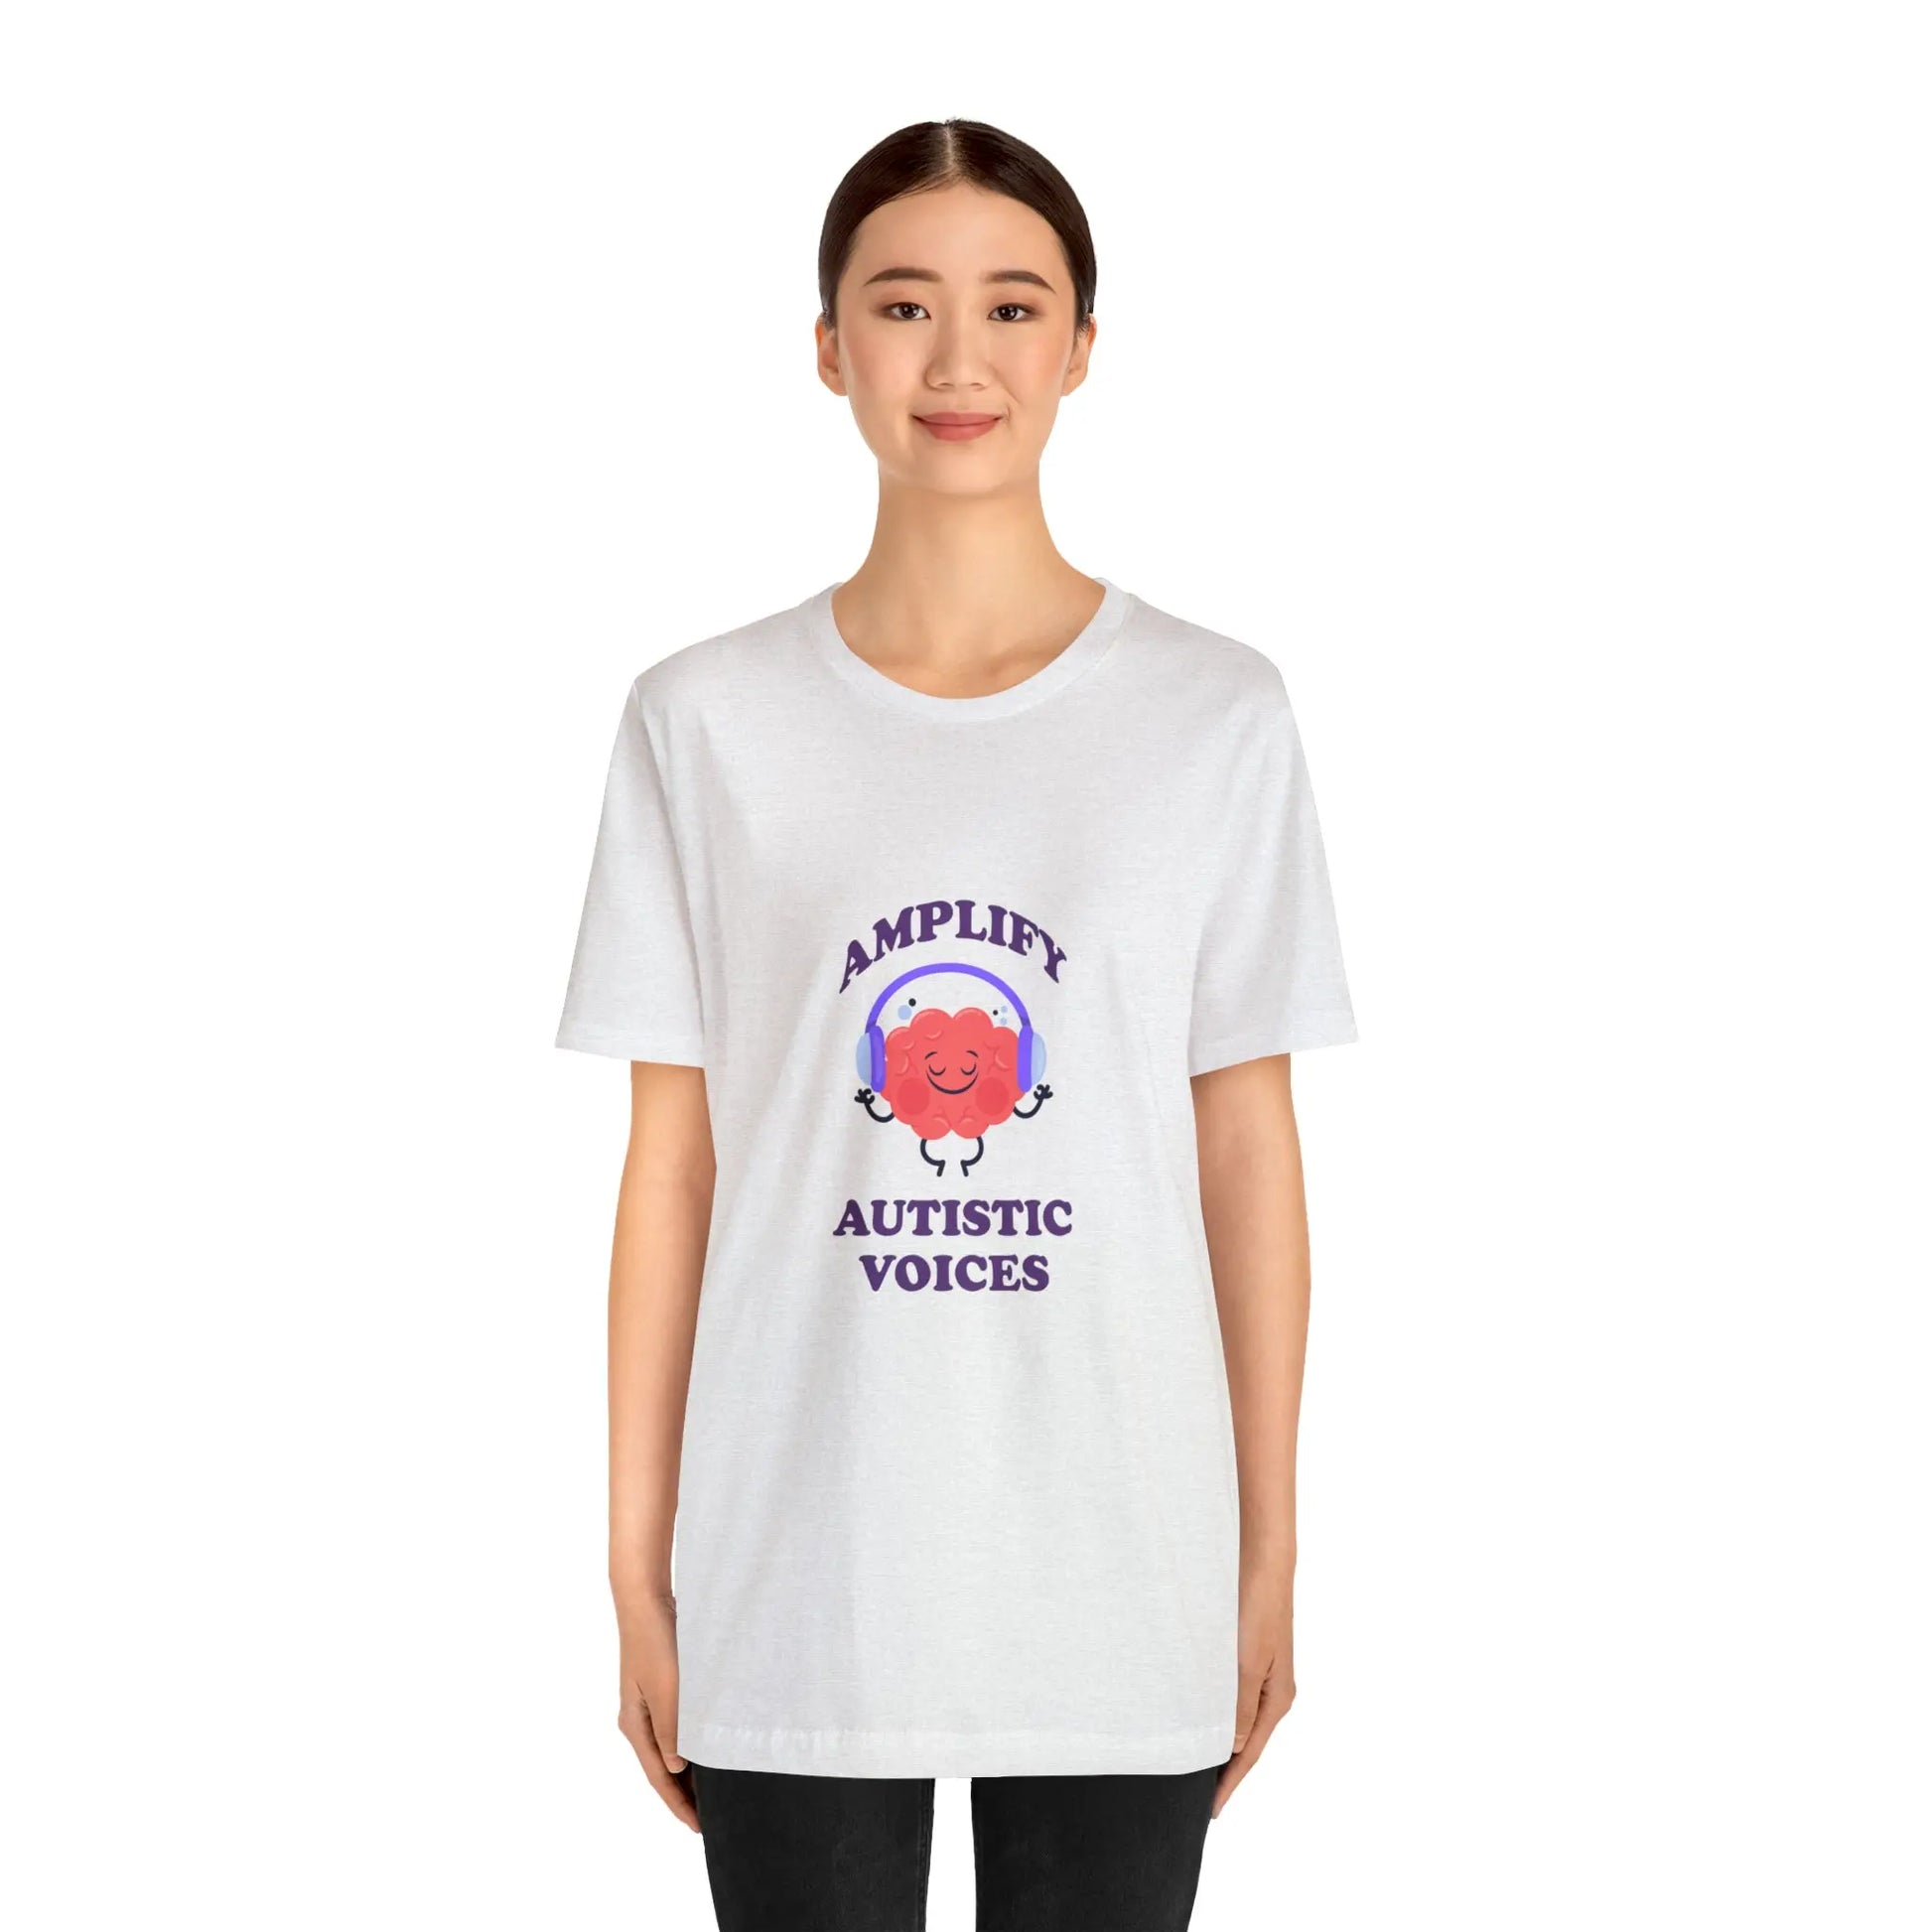 Amplify Autistic Voices T-Shirt